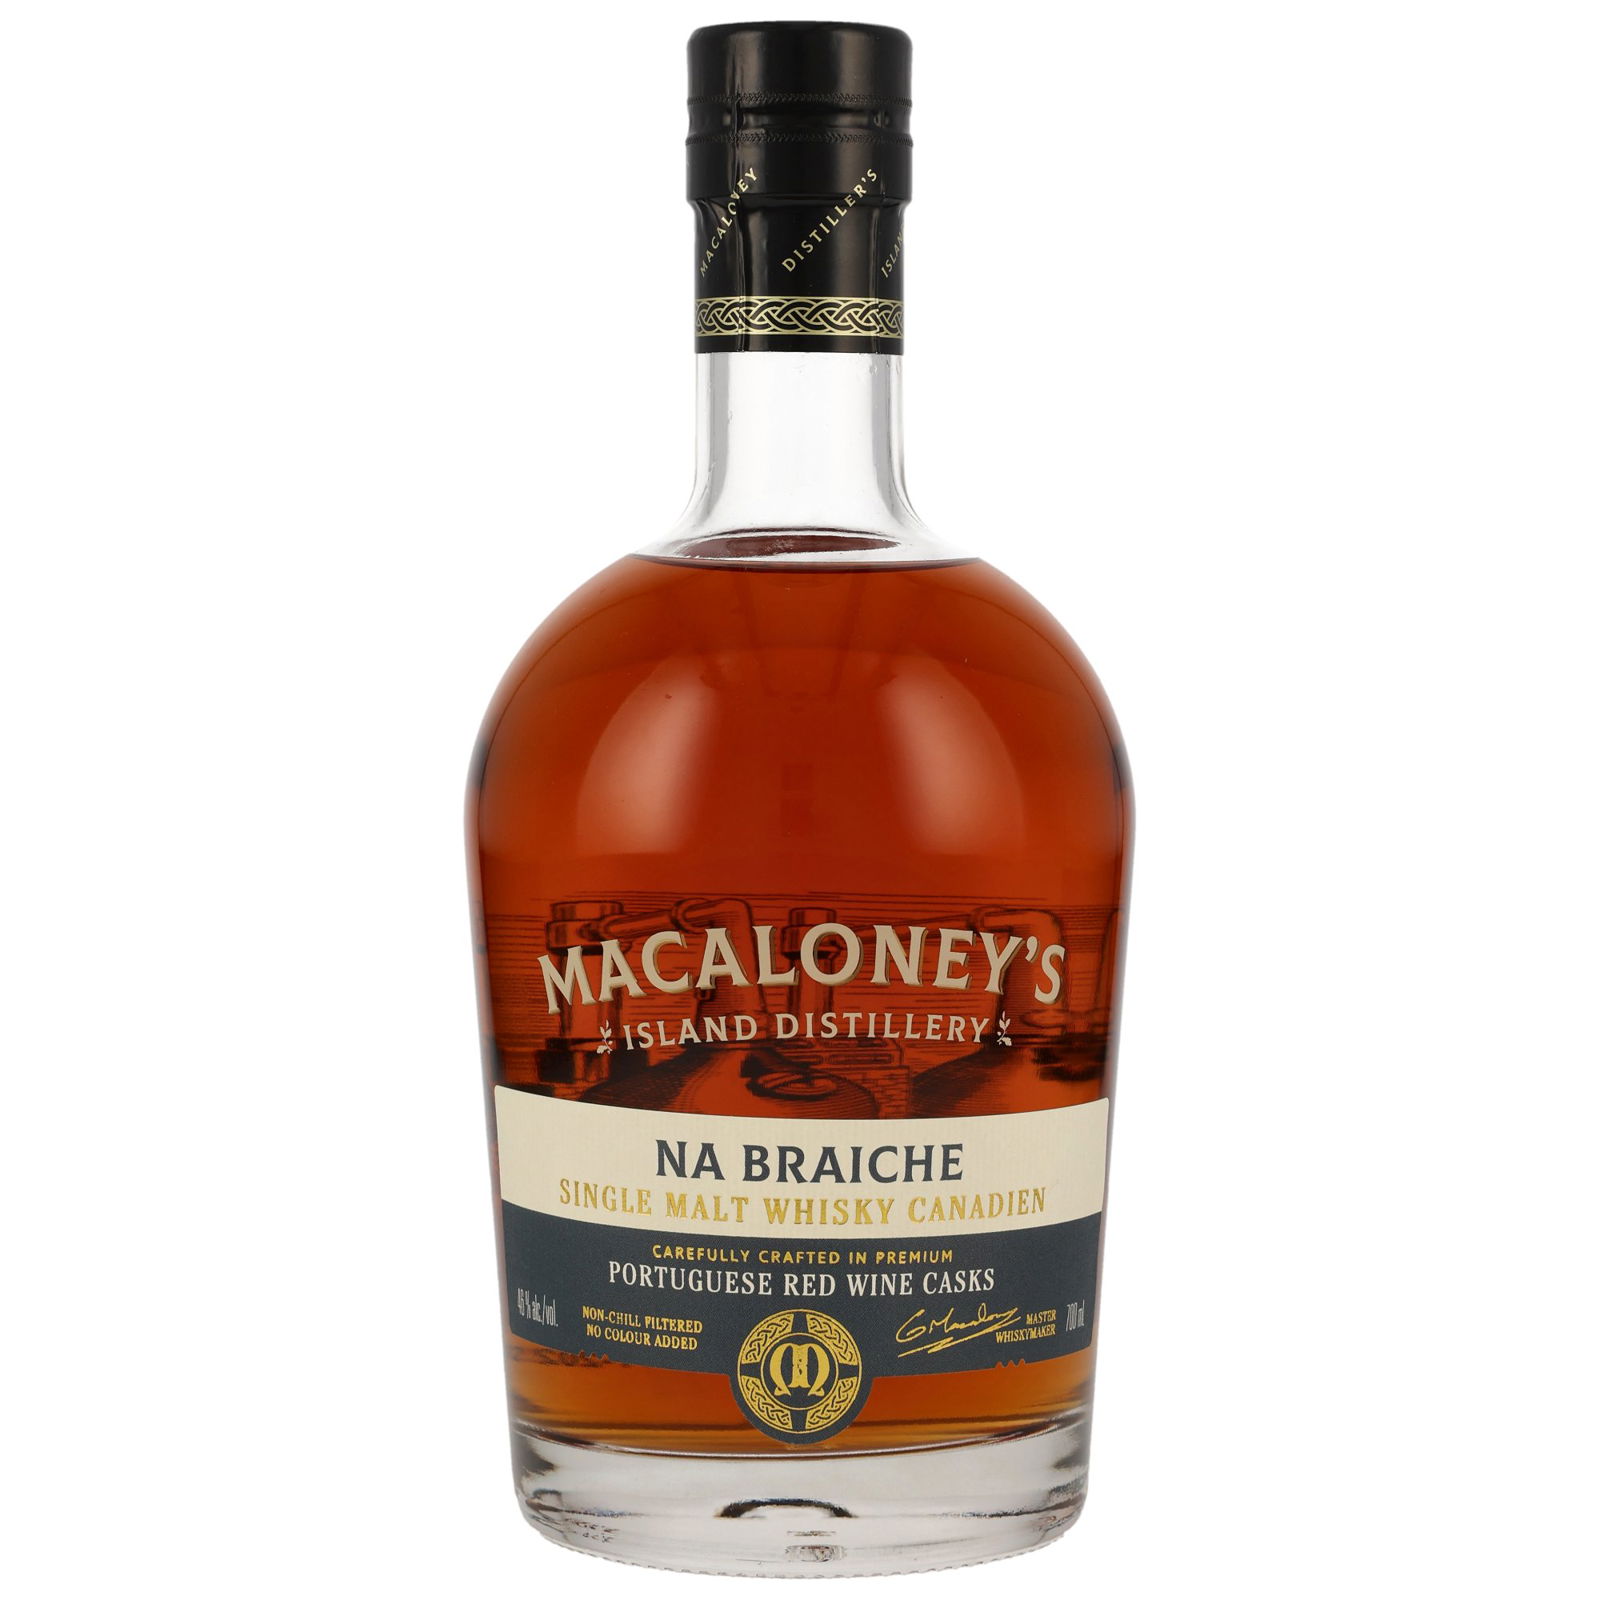 Macaloney's Na Braiche